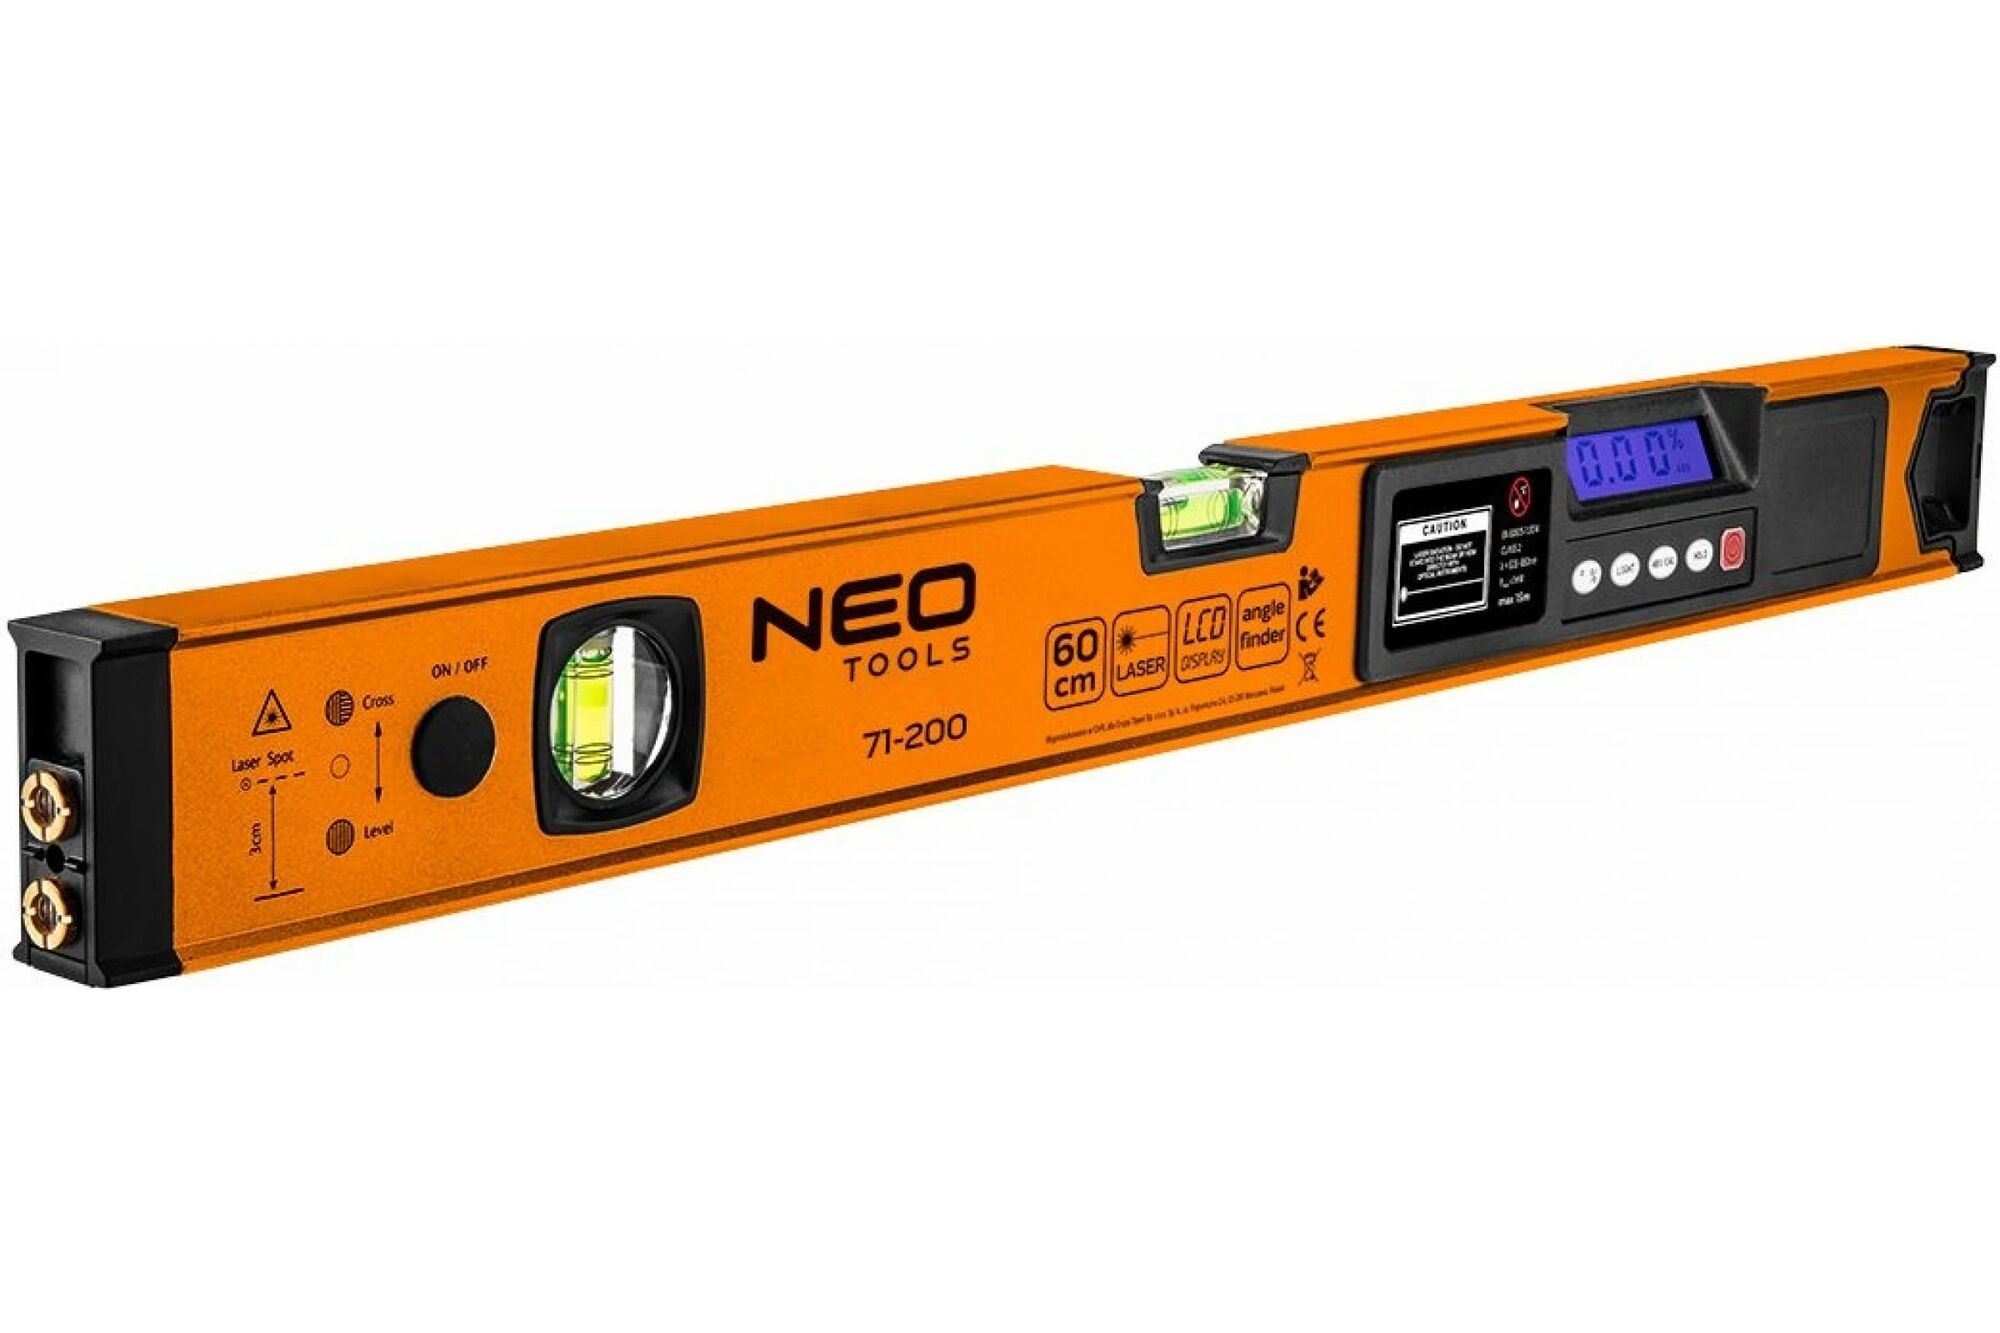 Цифровой уровень NEO Tools, 60 см, 2 глазка, лазер 10 м, LCD дисплей 71-200